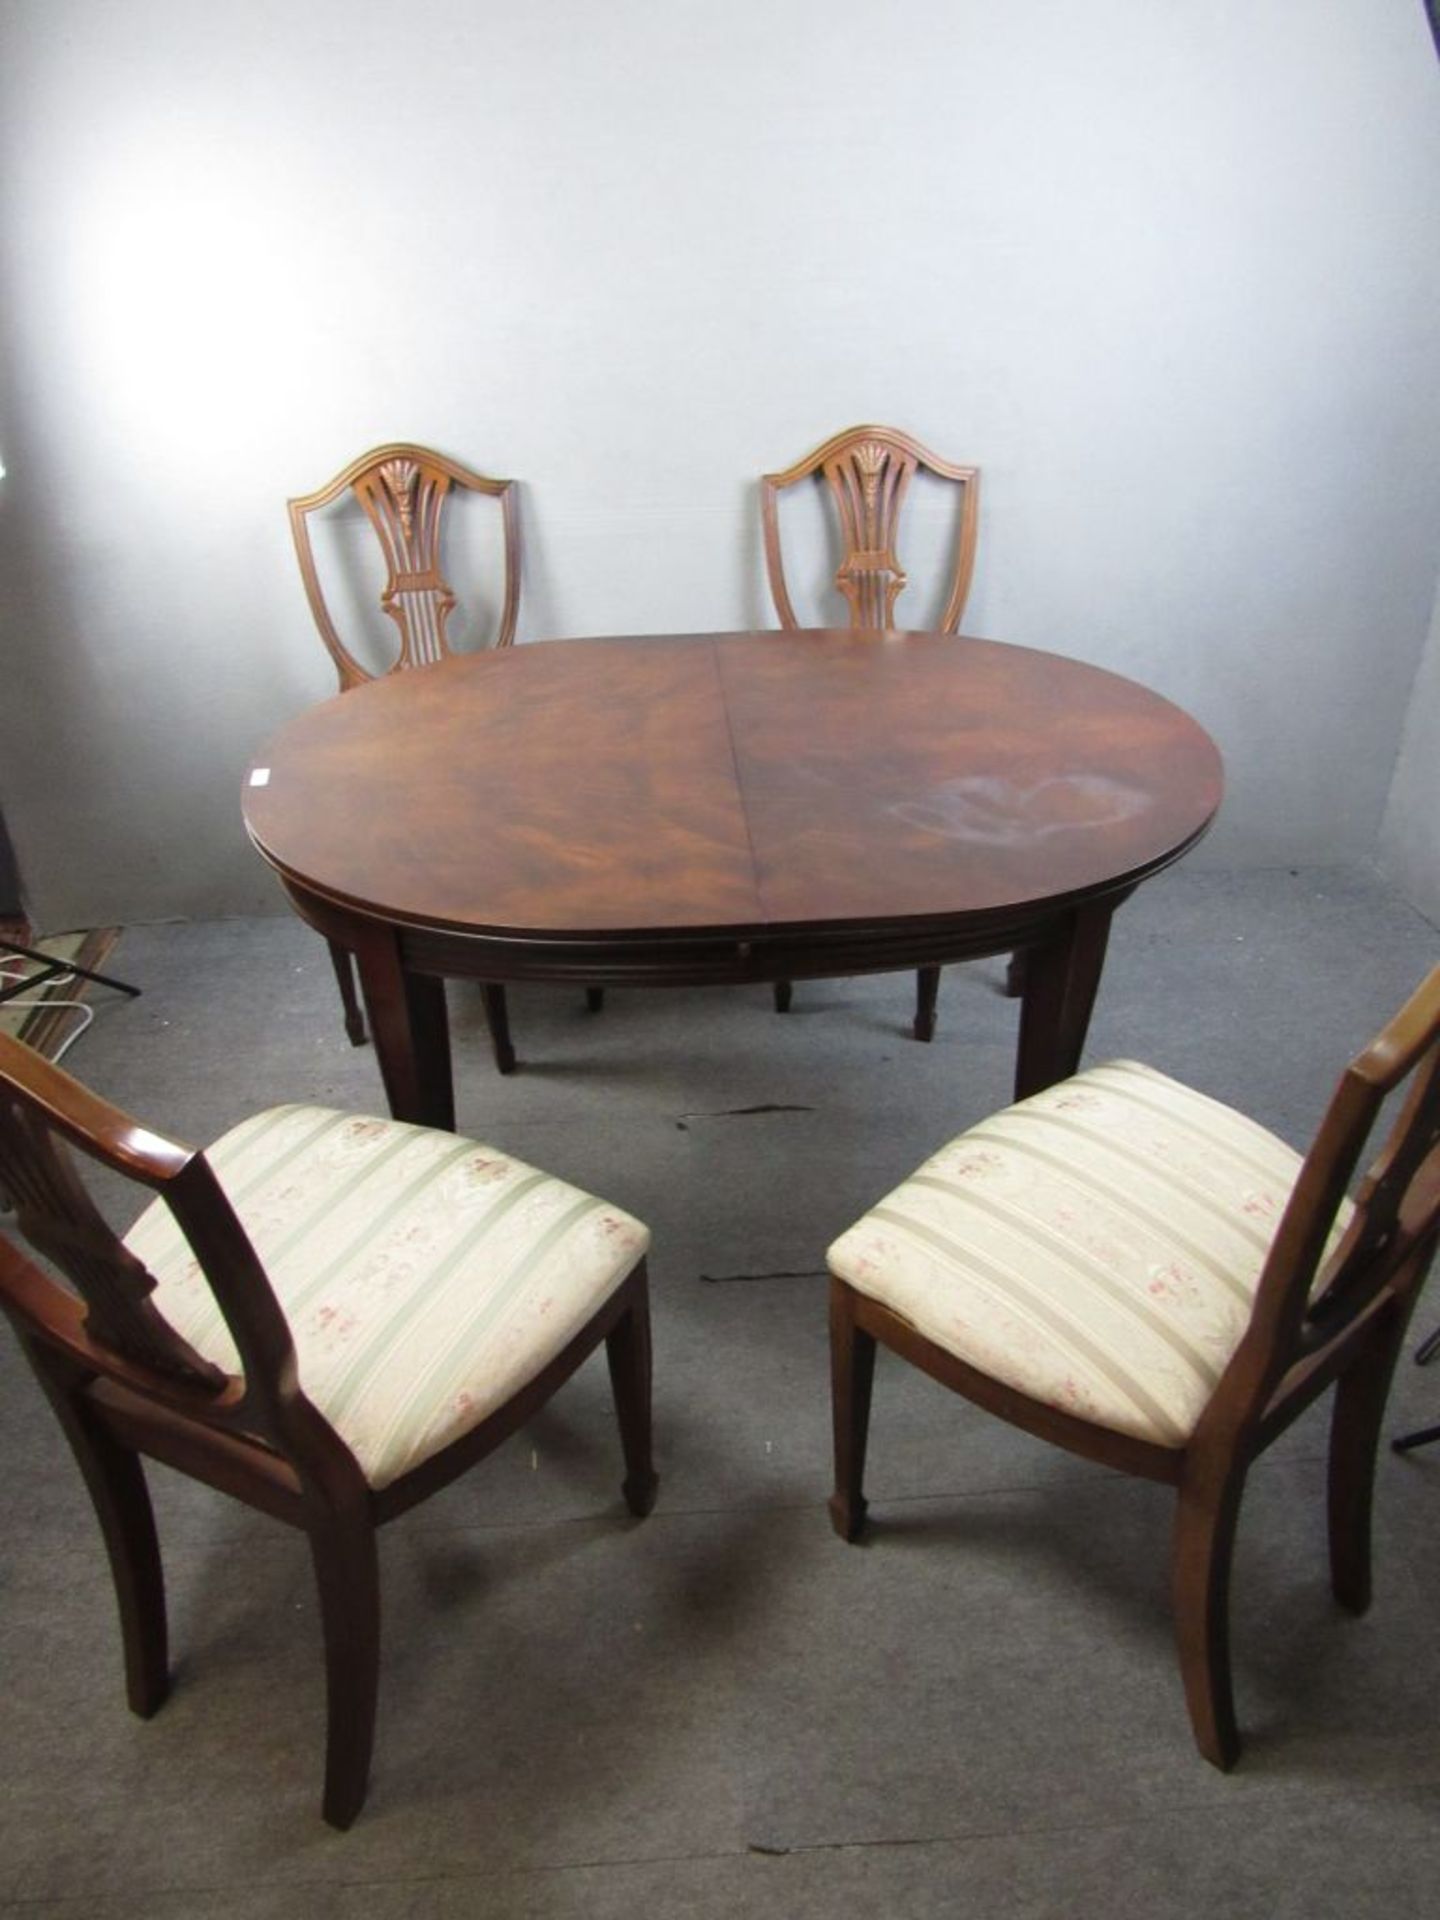 Ovaler kleiner Esszimmertisch und vier passige Stühle Nussbaum Tisch ca.120x95cm